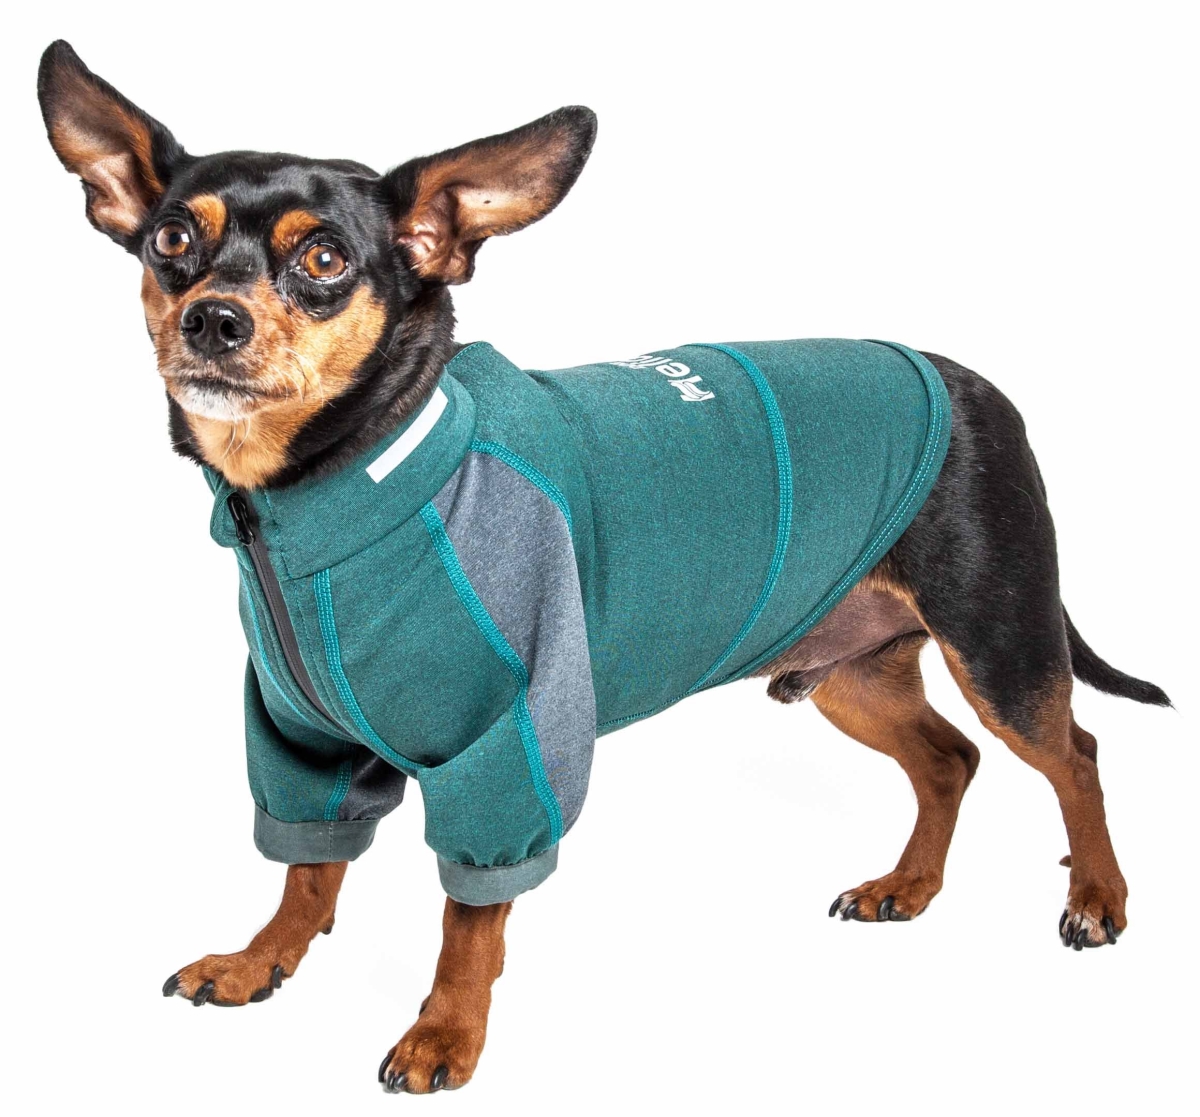 Tshl6gnmd Eboneflow Mediumweight 4-way-stretch Flexible & Breathable Performance Dog Yoga T-shirt, Forest Green & Grey - Medium